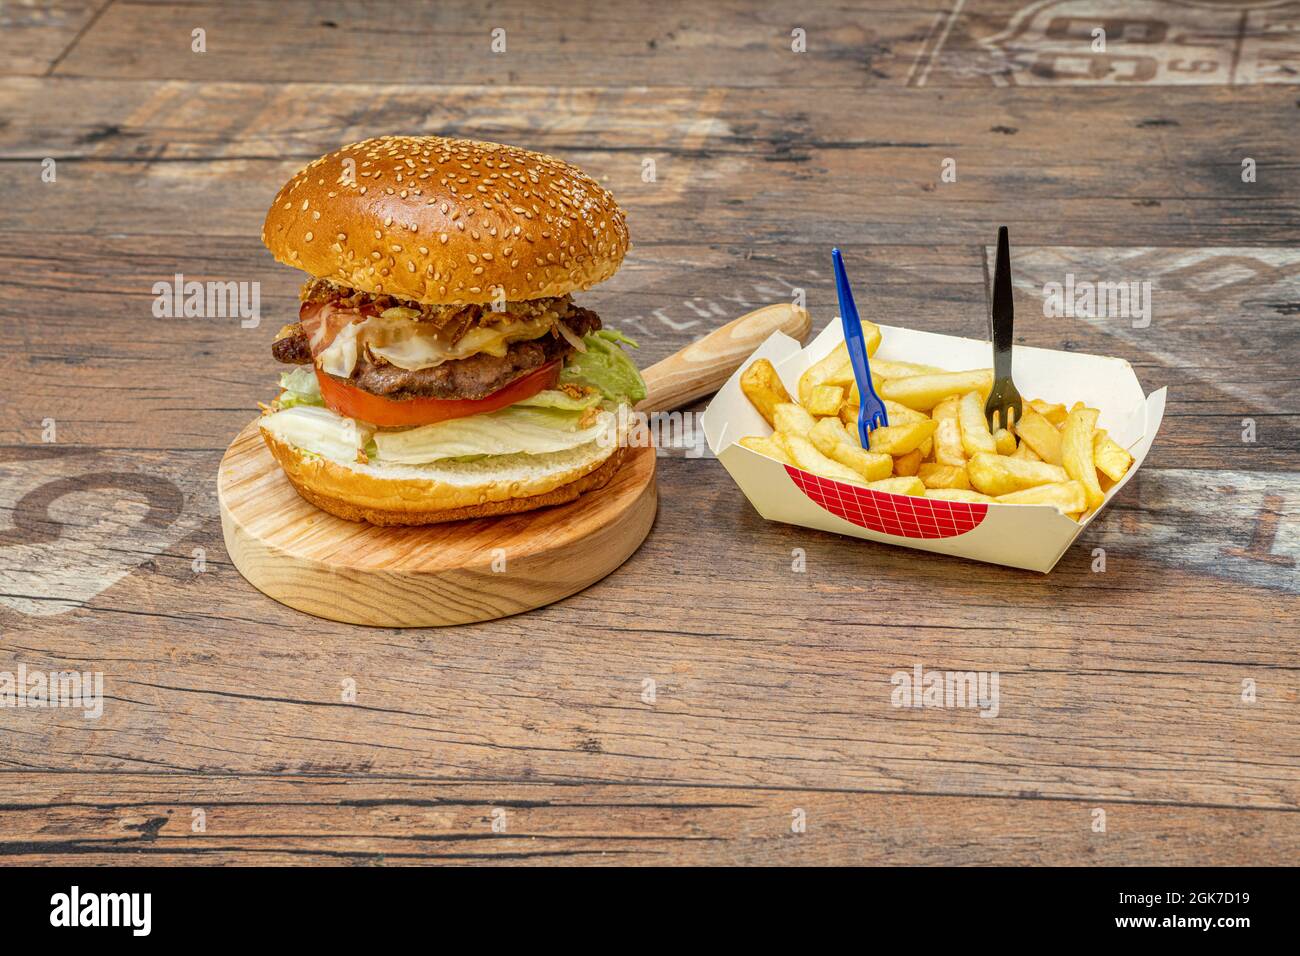 Klassischer Rindfleischburger mit Brot mit Sesamsamen, Tomaten und Salat und gebratenen Schinkenauflagen mit gebratener Zwiebel mit Pommes als Garnitur Stockfoto